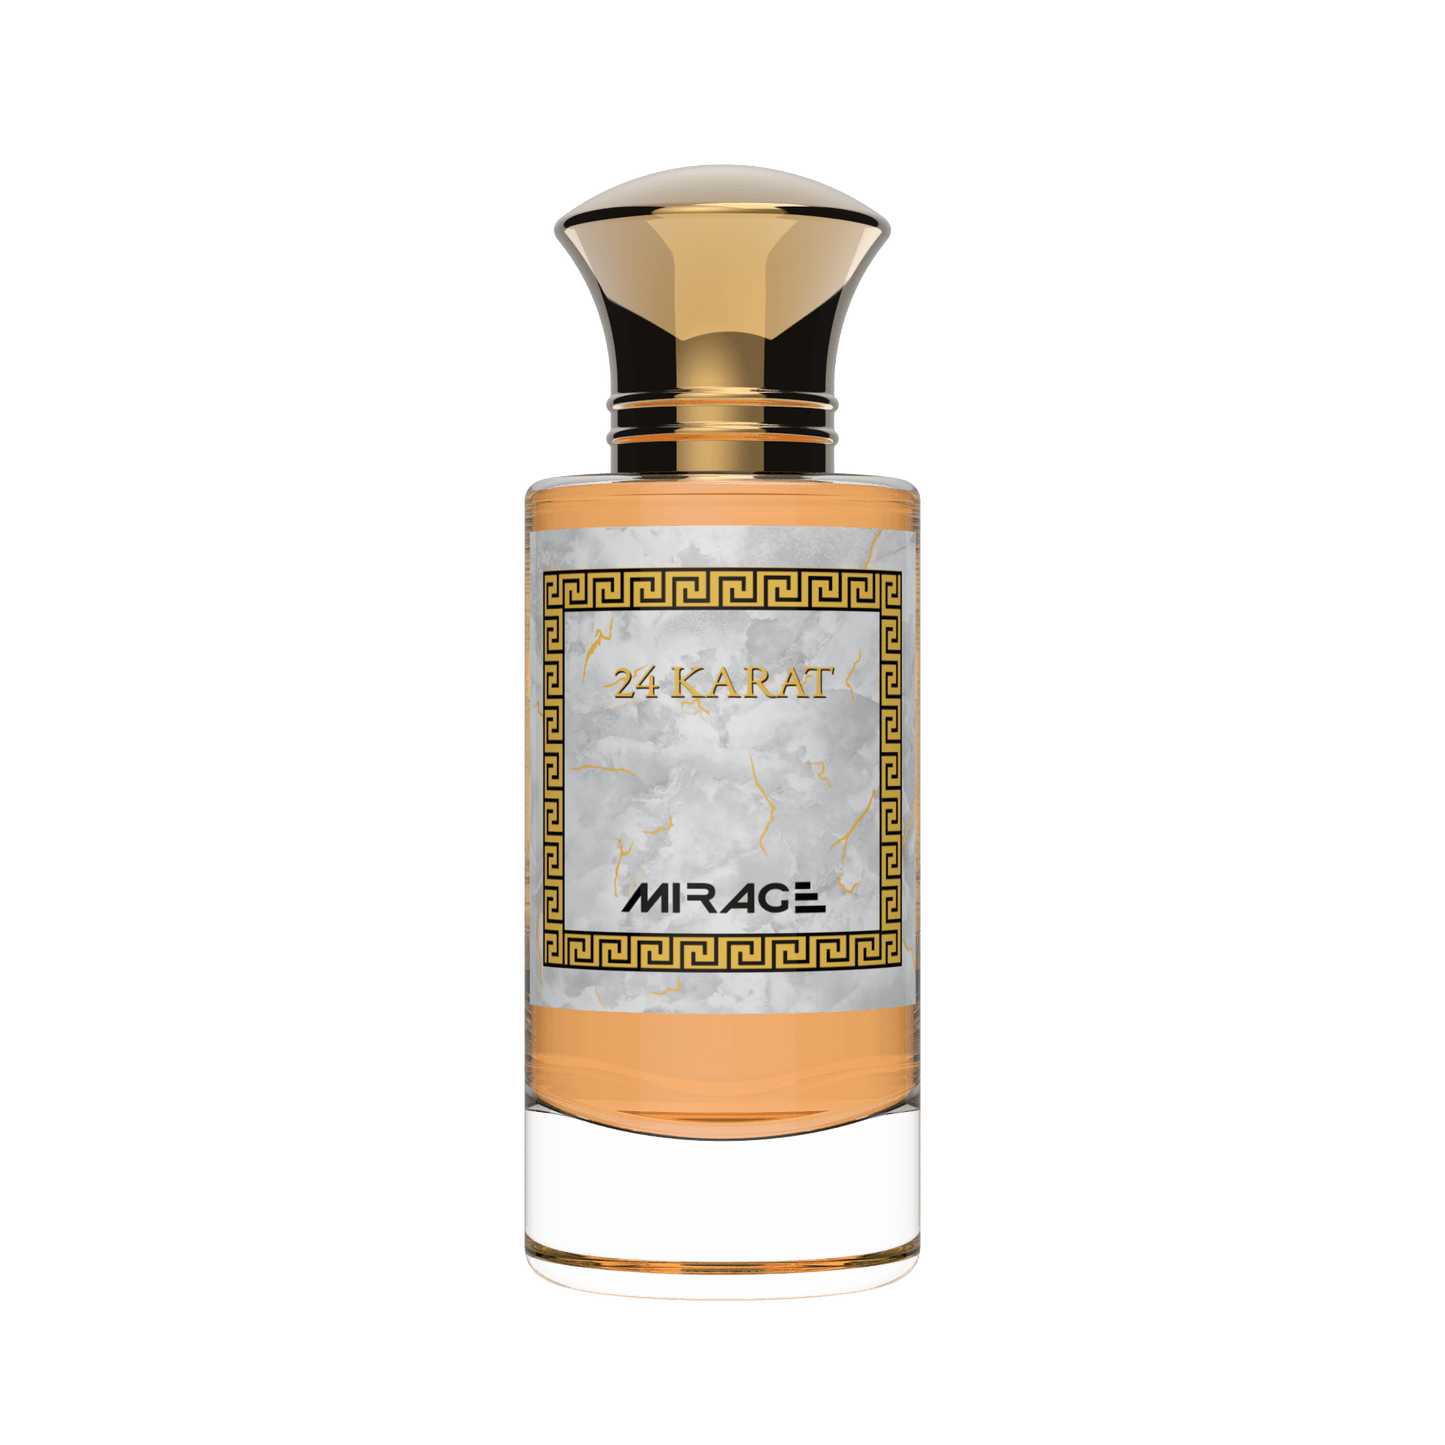 24 Karat - Parfect - Baccarat Vanille - Parfumerie Mirage - Parfums orientaux - Parfum Karat Convoité - parfum boisé et gourmand - Baccarat